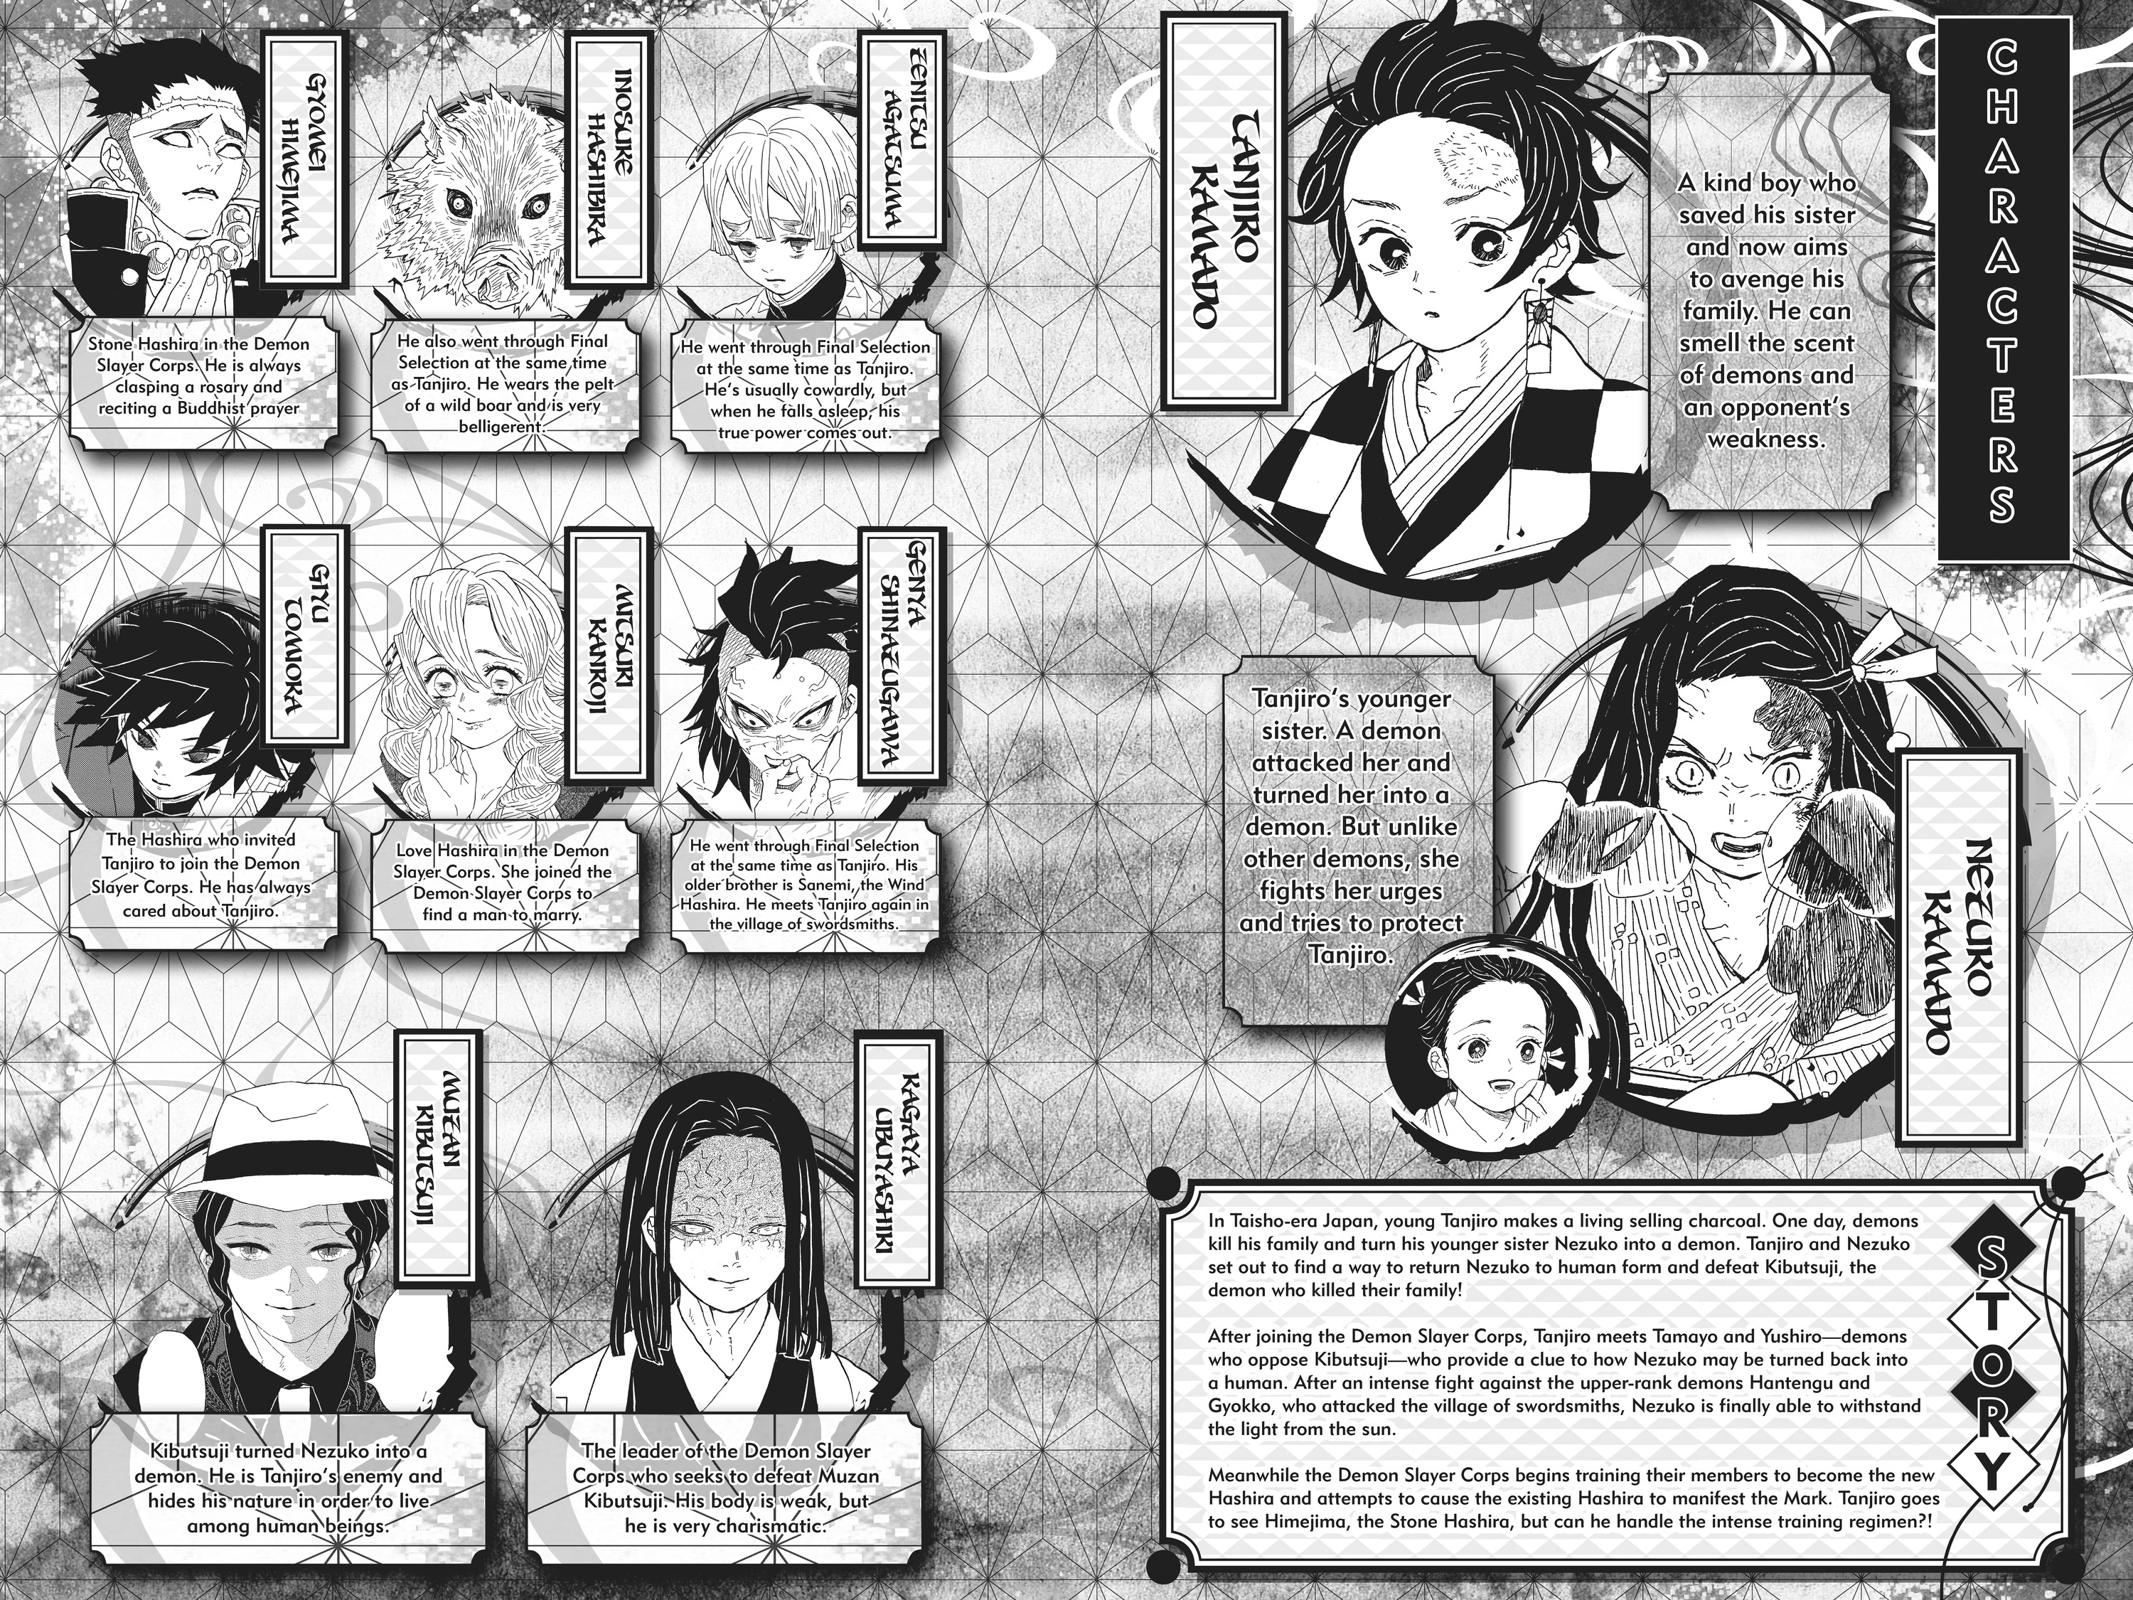 Demon Slayer Manga Manga Chapter - 134 - image 4